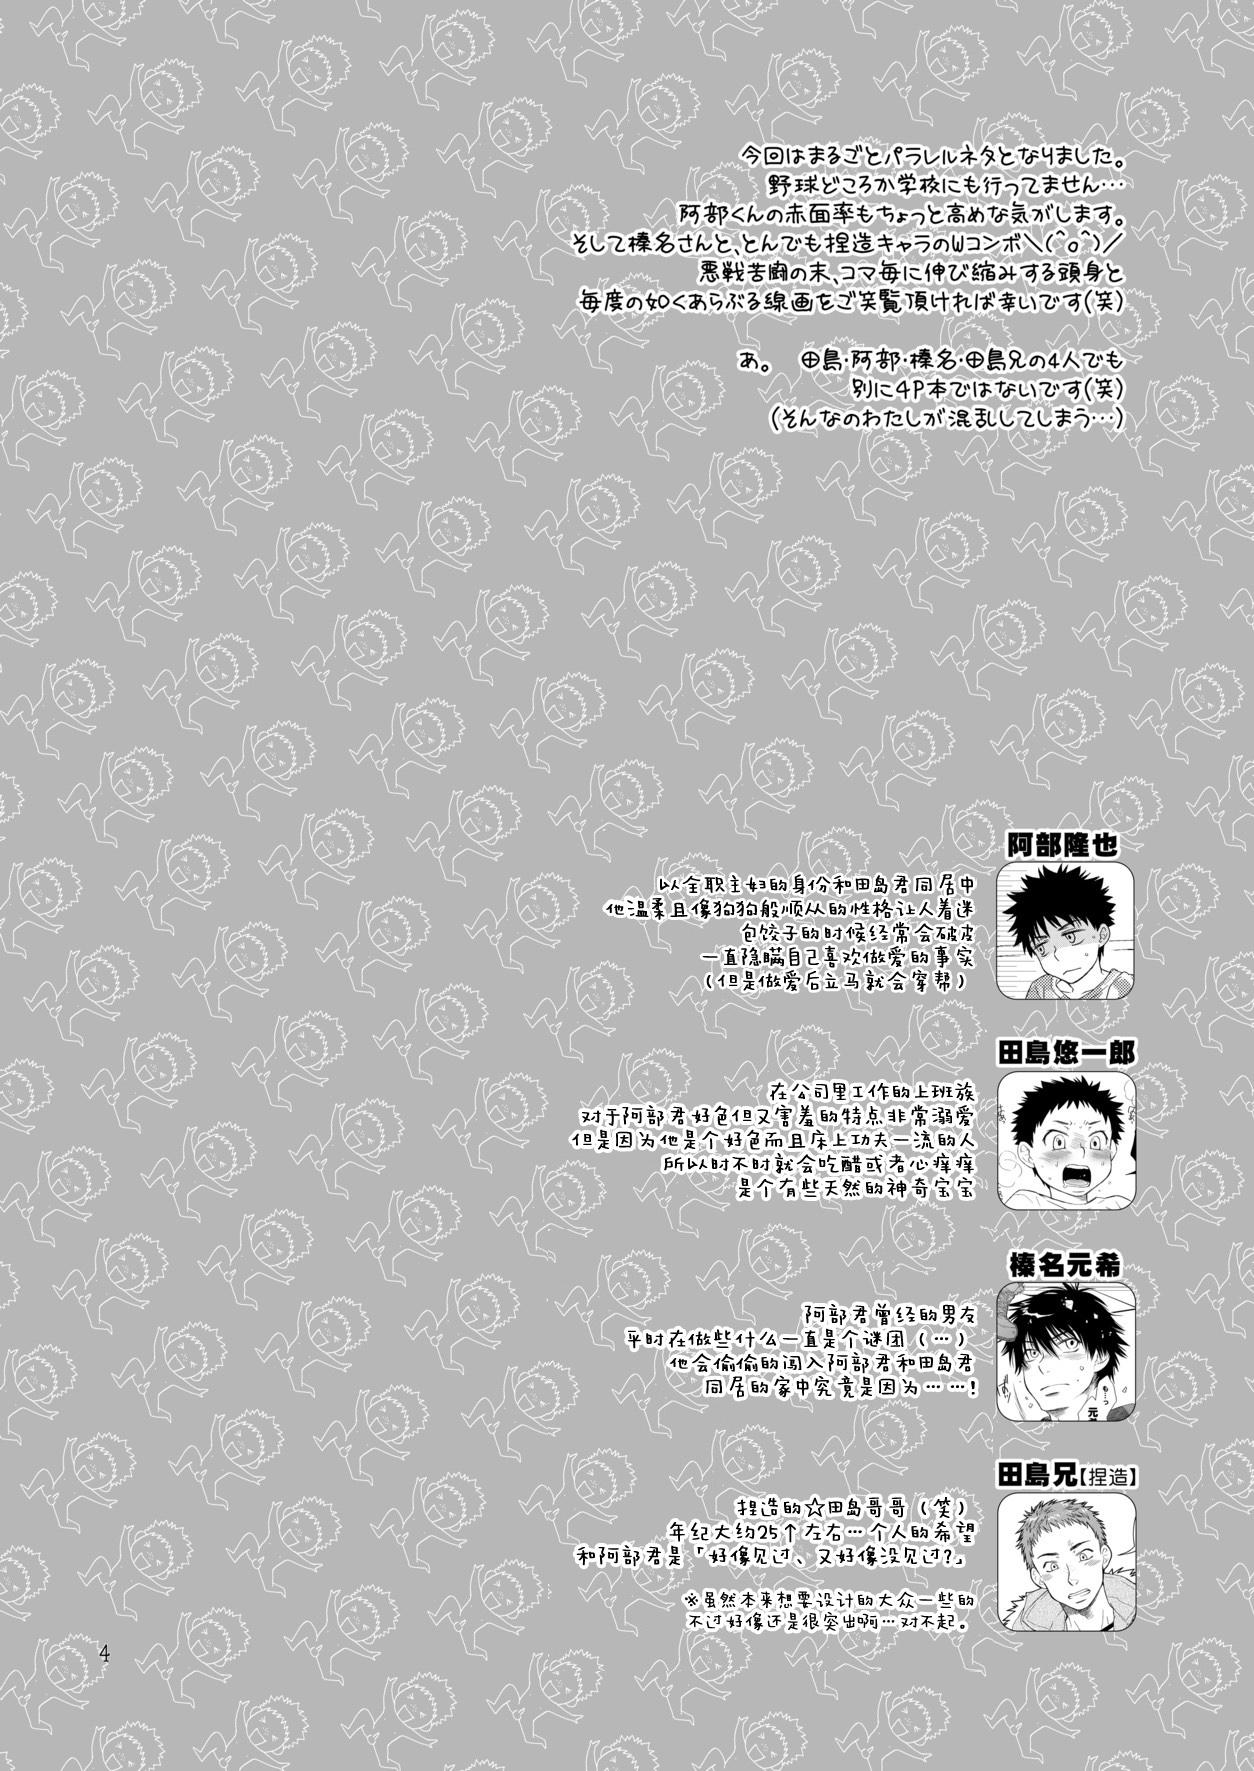 Two Tsuyudaku Fight! 8 - Ookiku furikabutte | big windup Bwc - Page 4